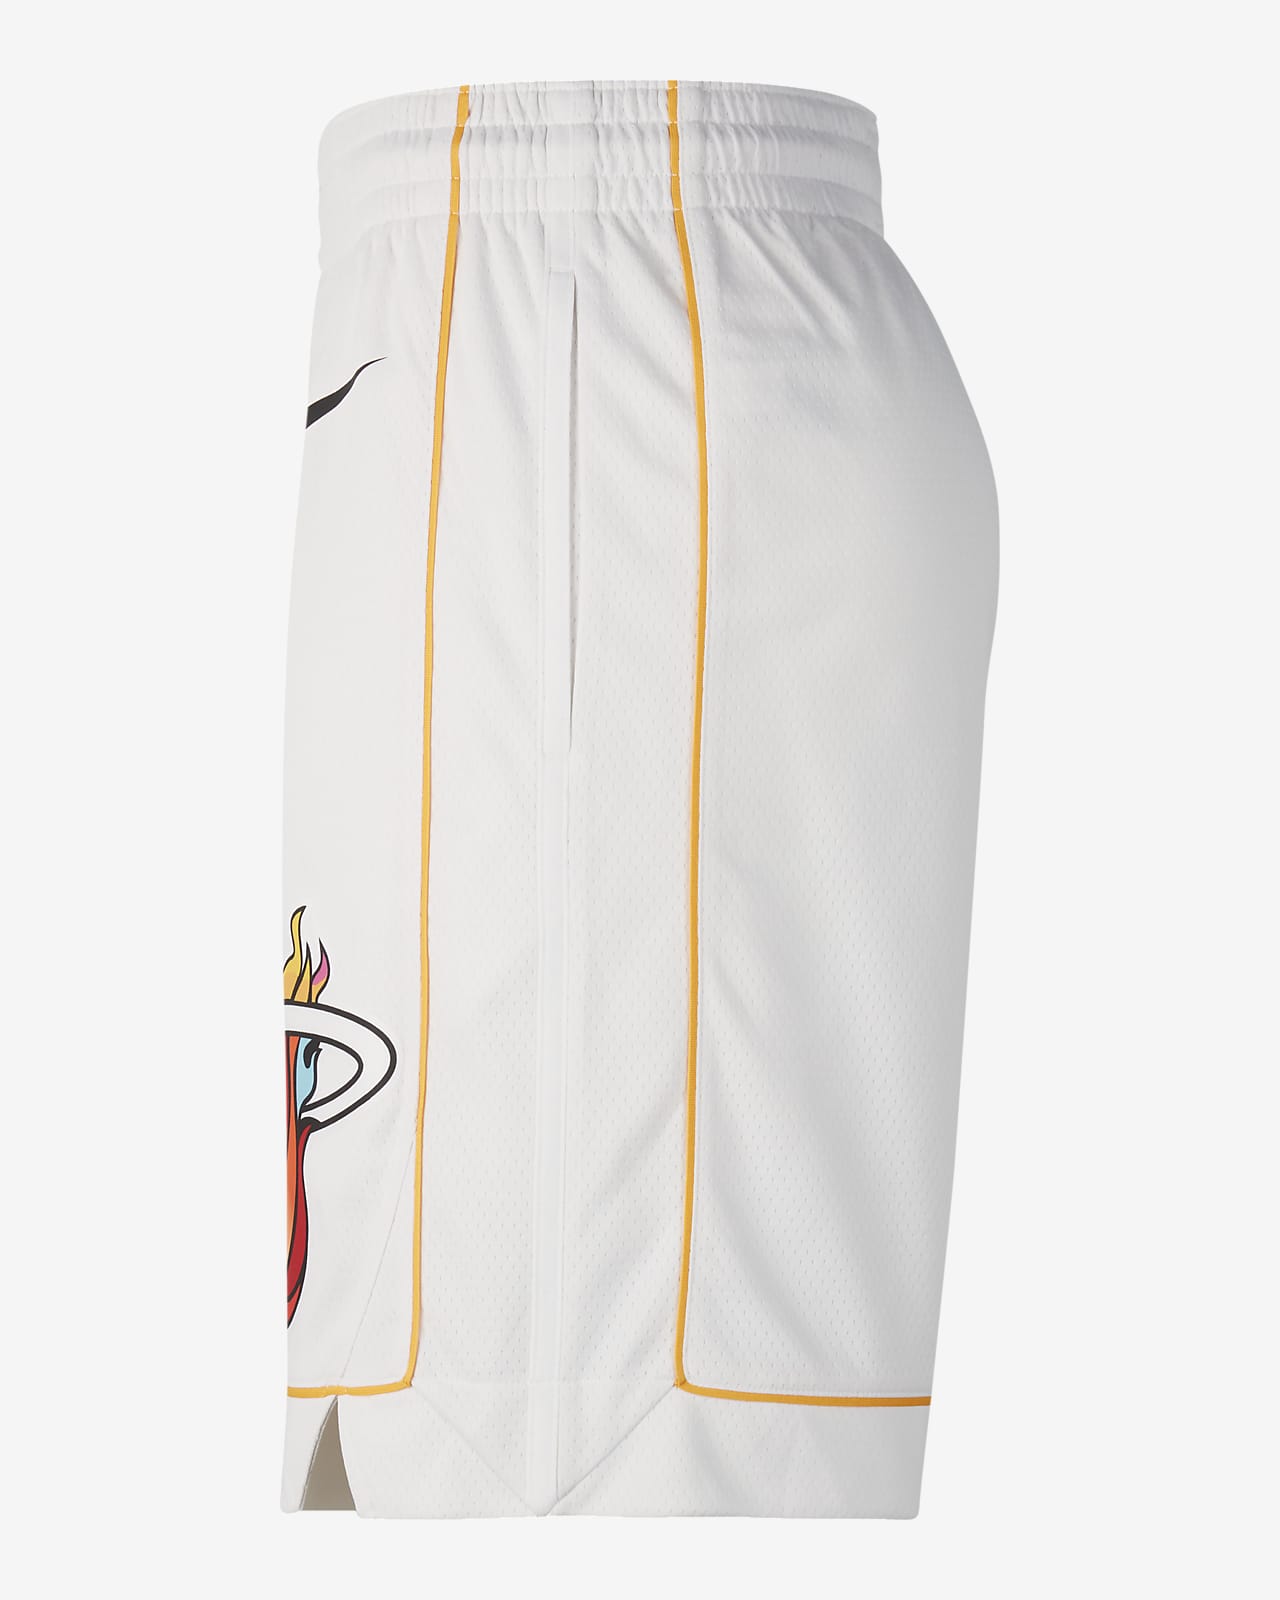 Antecedente Botánica el viento es fuerte Miami Heat City Edition Pantalón corto Nike Dri-FIT Swingman de la NBA -  Hombre. Nike ES